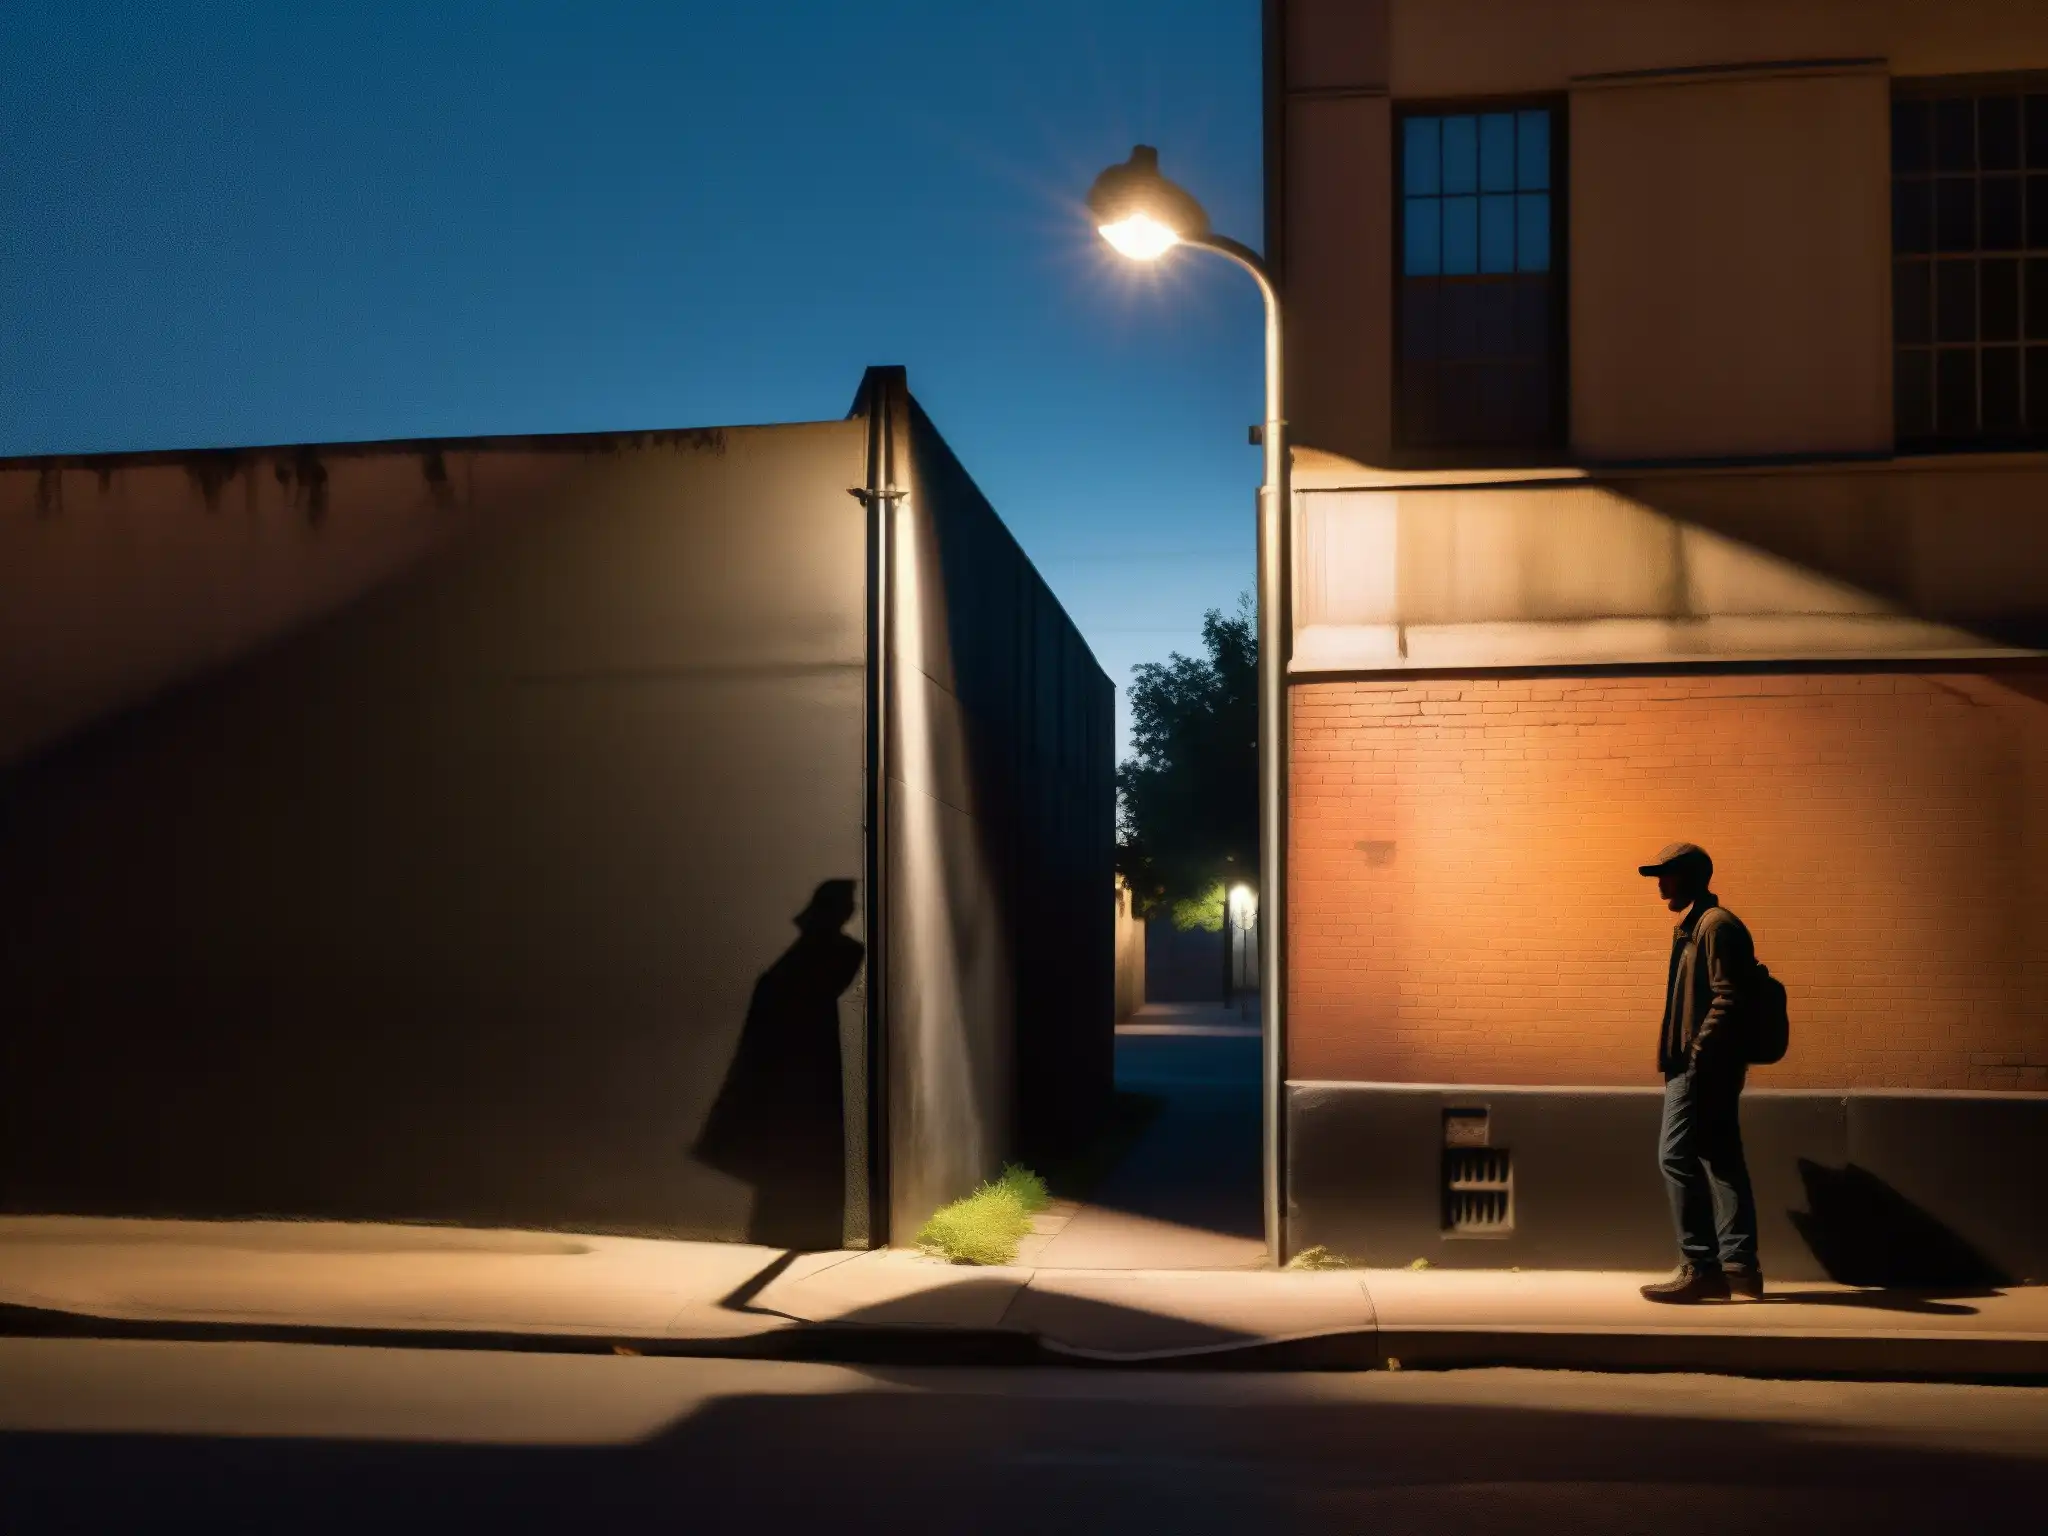 Figura misteriosa en esquina nocturna, entre sombras y graffiti, evocando leyendas urbanas análisis mitos profundidad